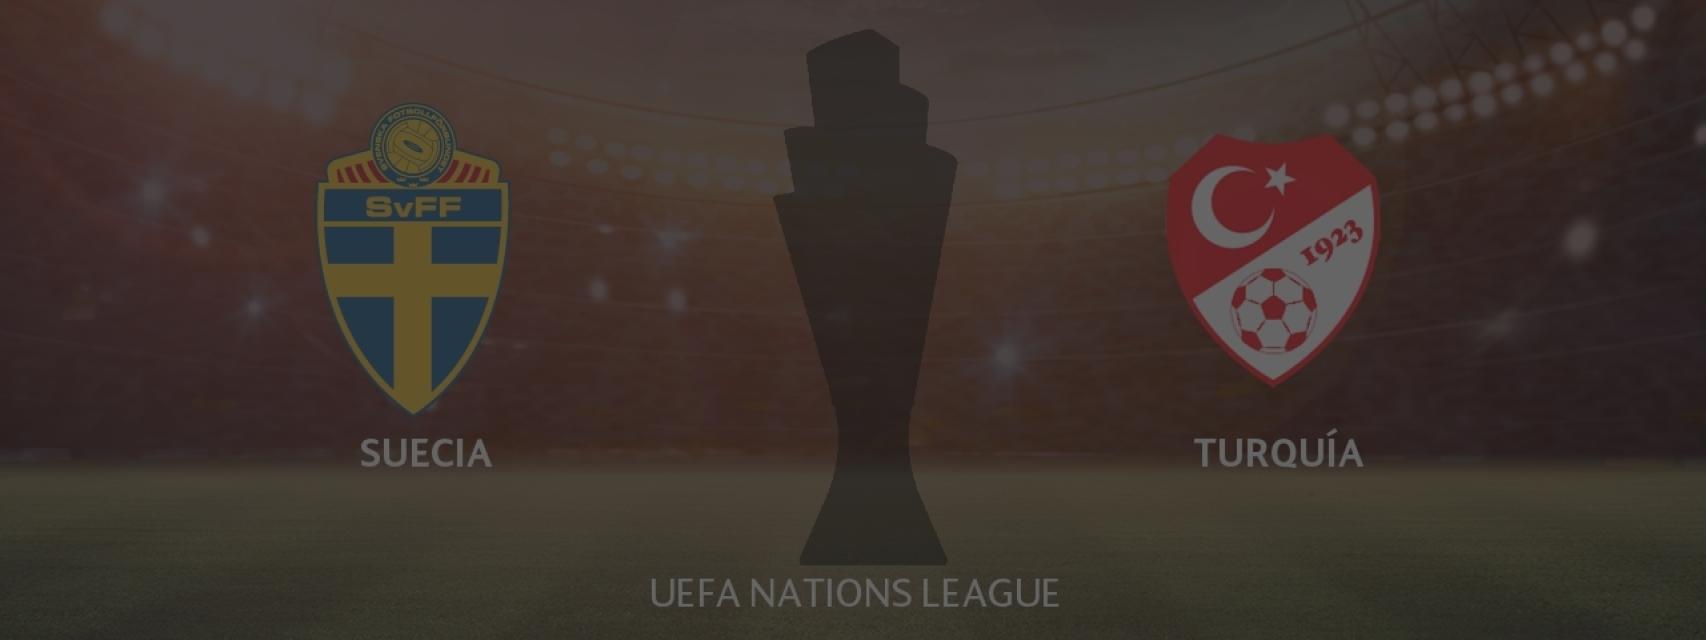 Suecia - Turquía, UEFA Nations League